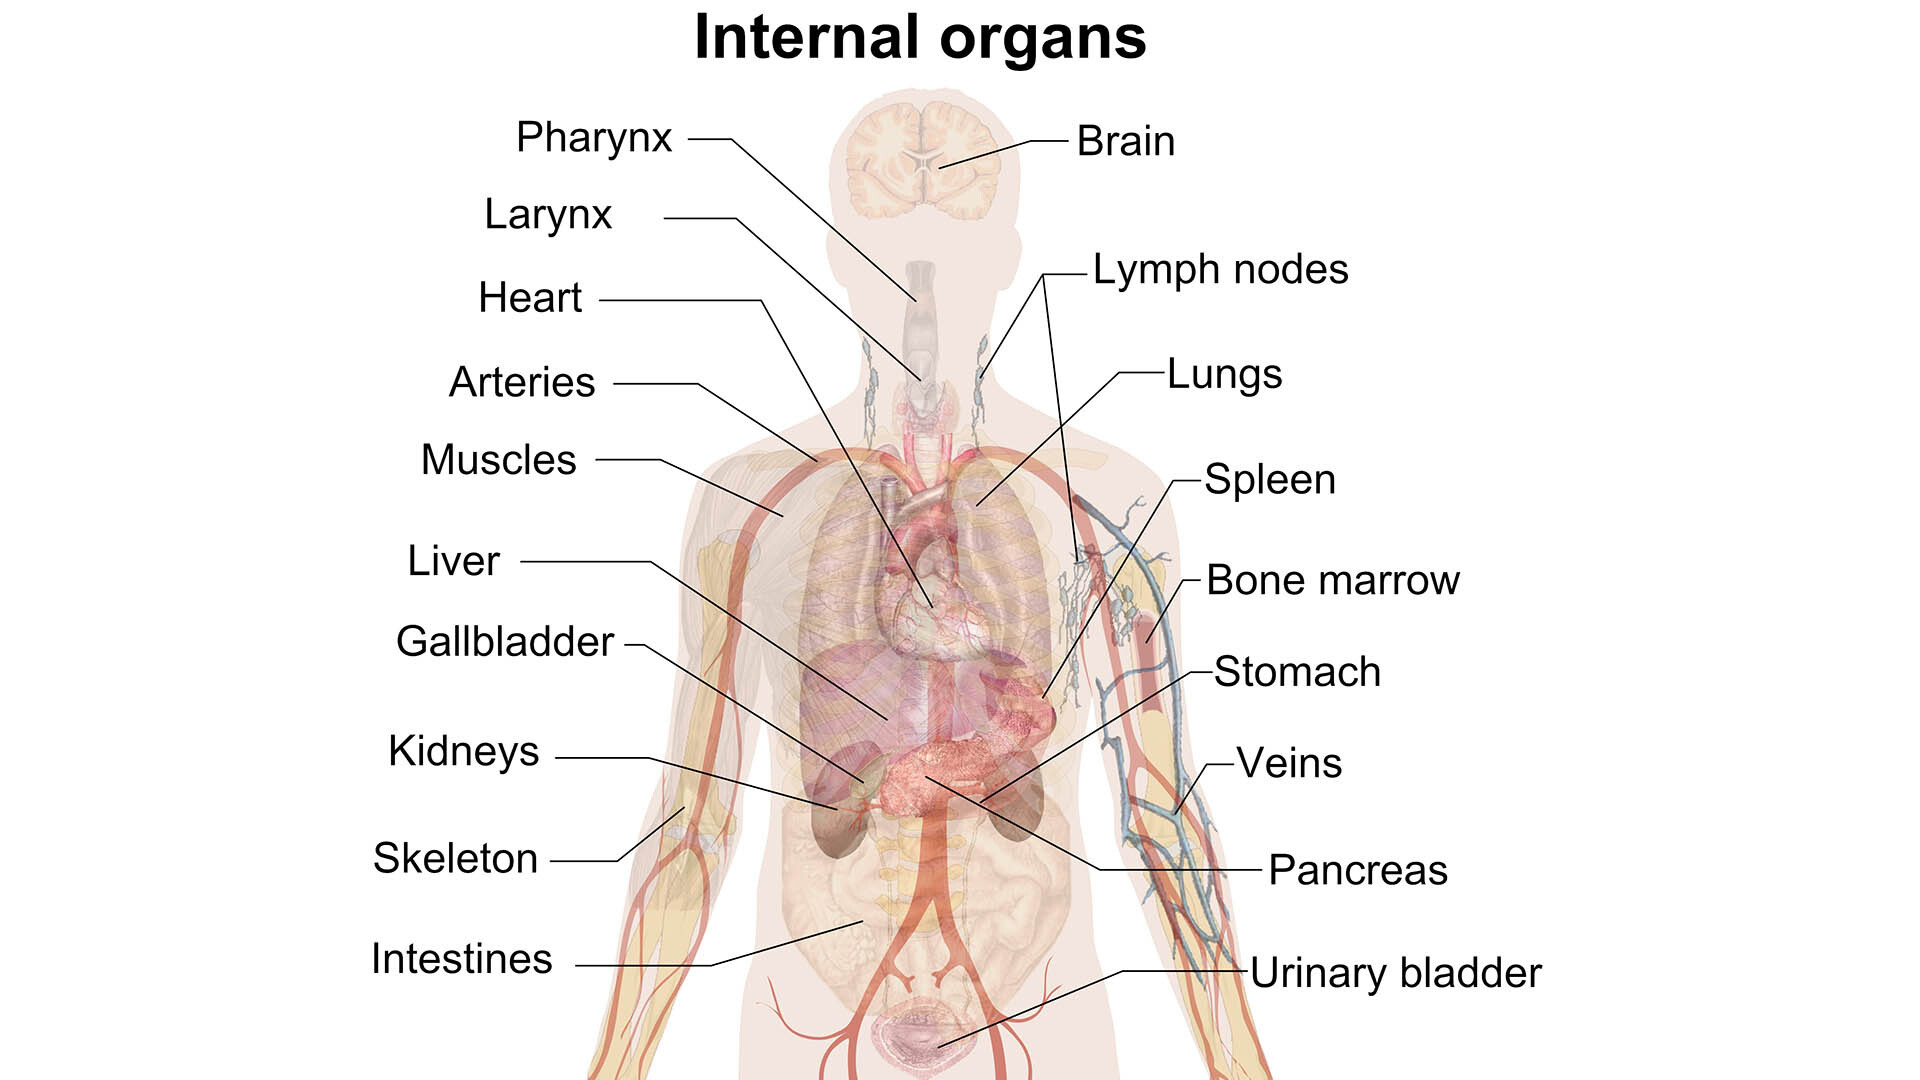 Human на русском языке. Анатомия человека. Внутренние органы. Внутренние органы человека. Анатомия человека органы.